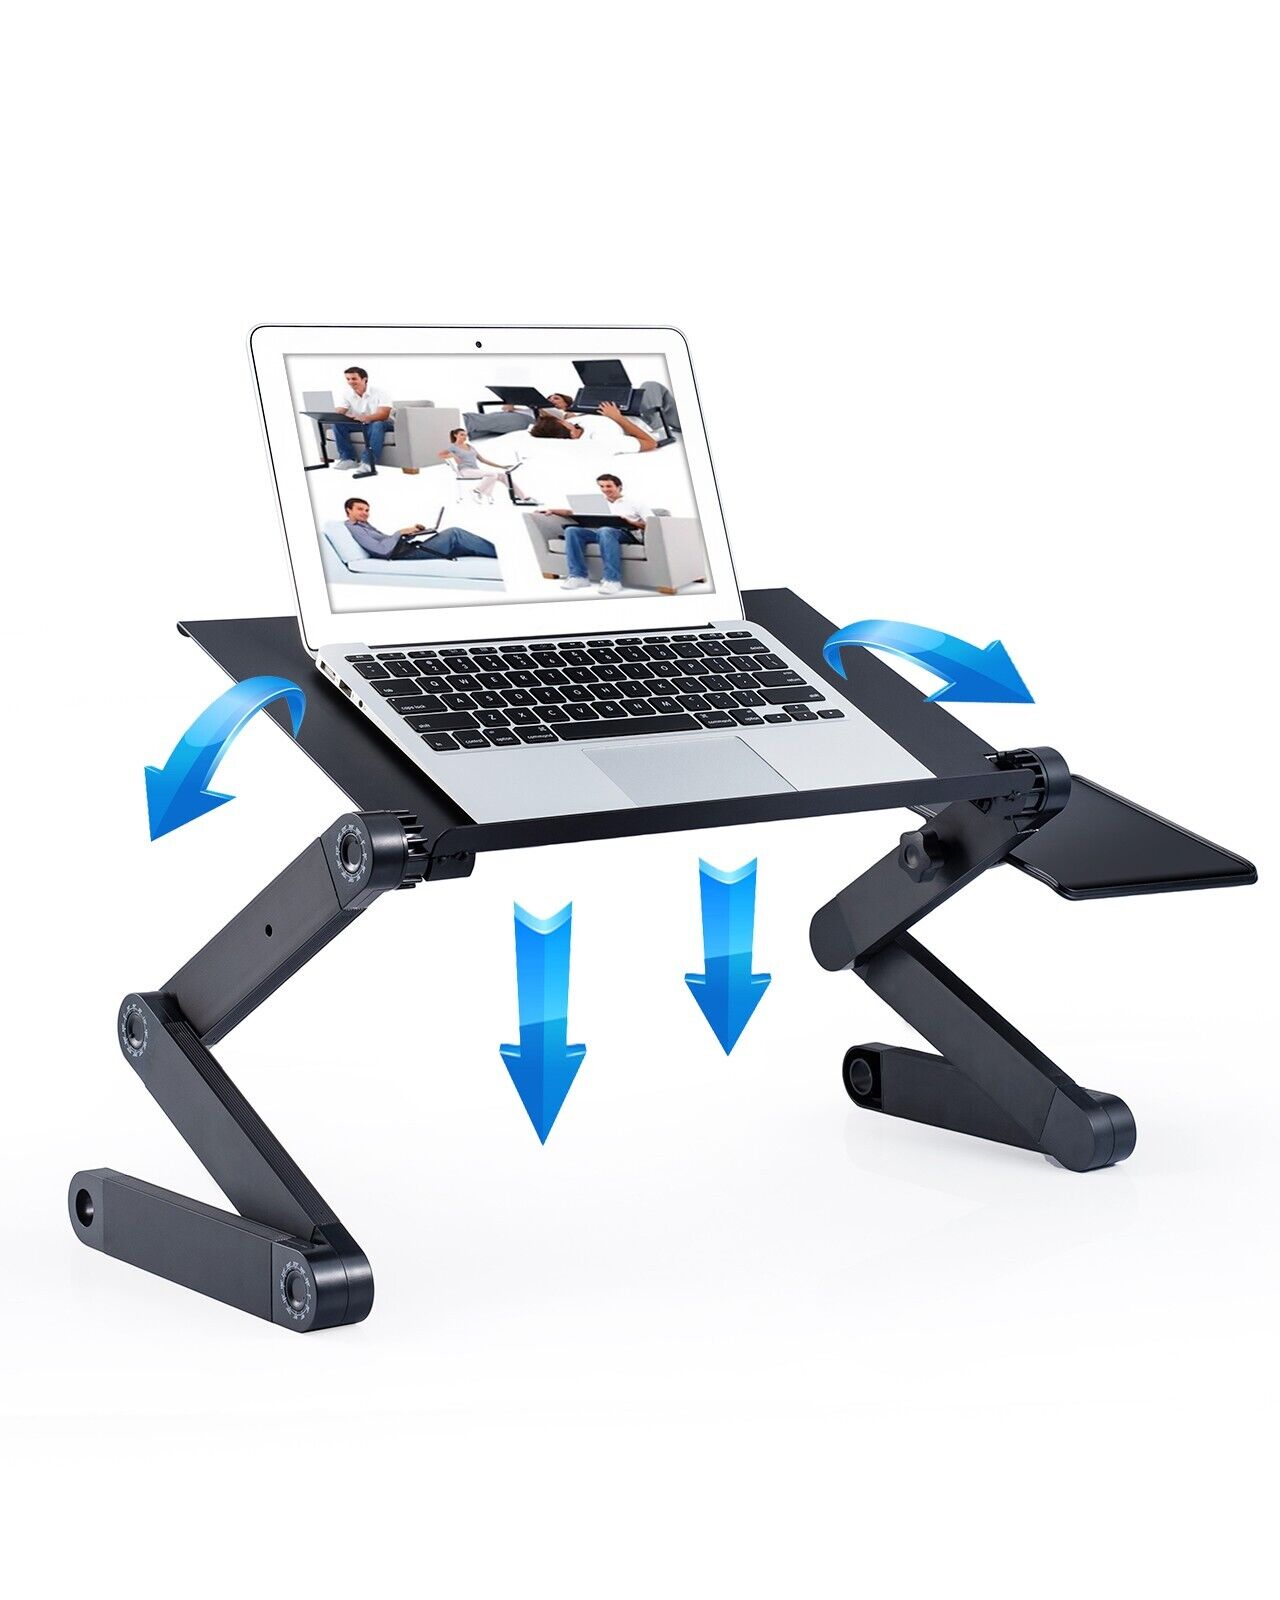 Adjustable Laptop Stand with Cooling Fans - Versatile Lap Workstation Desk